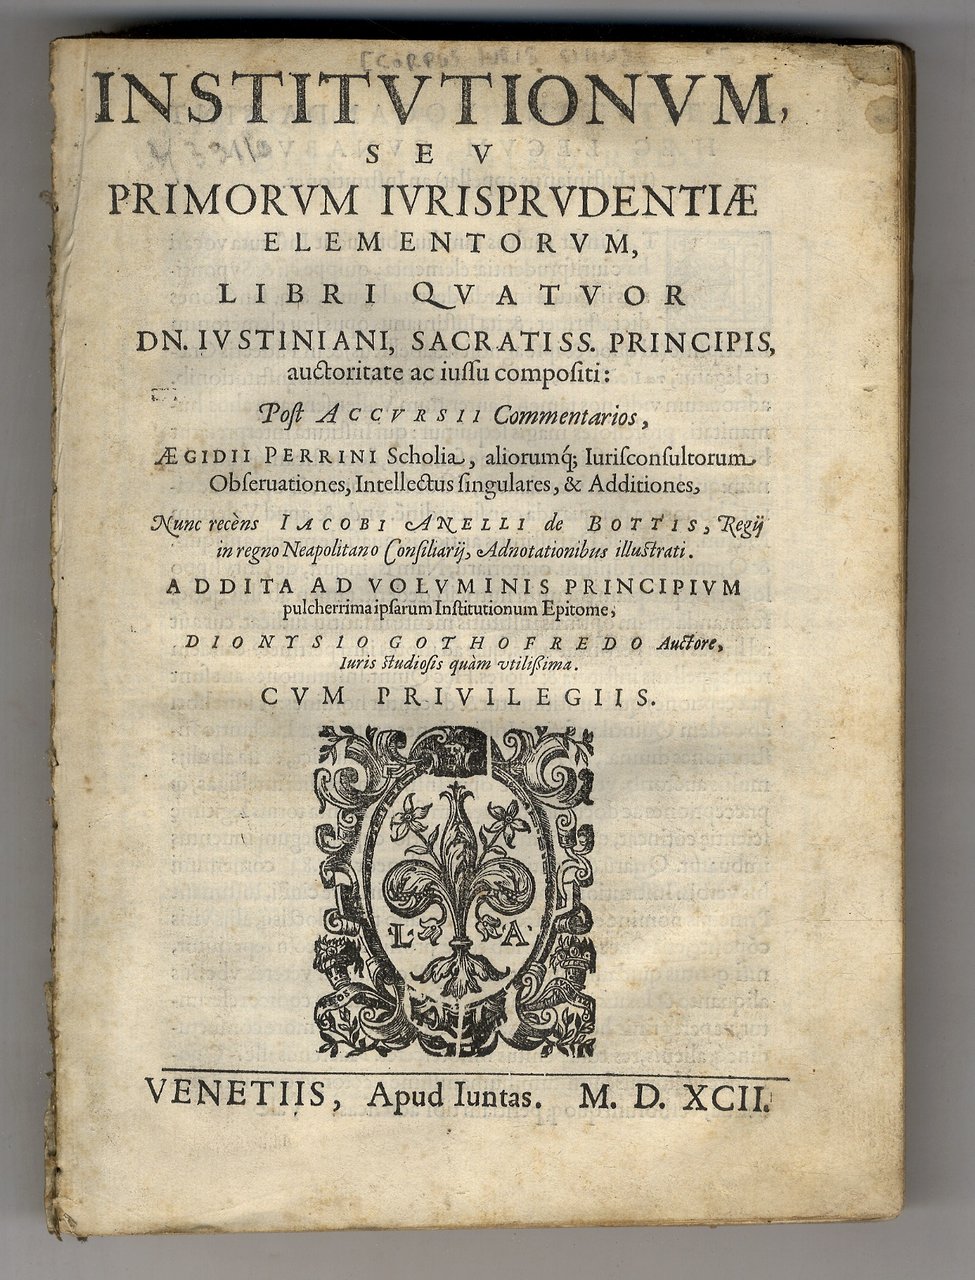 Institutionum, seu primorum iurisprudentiae elementorum, libri quatuor Dn. Iustiniani [.] …